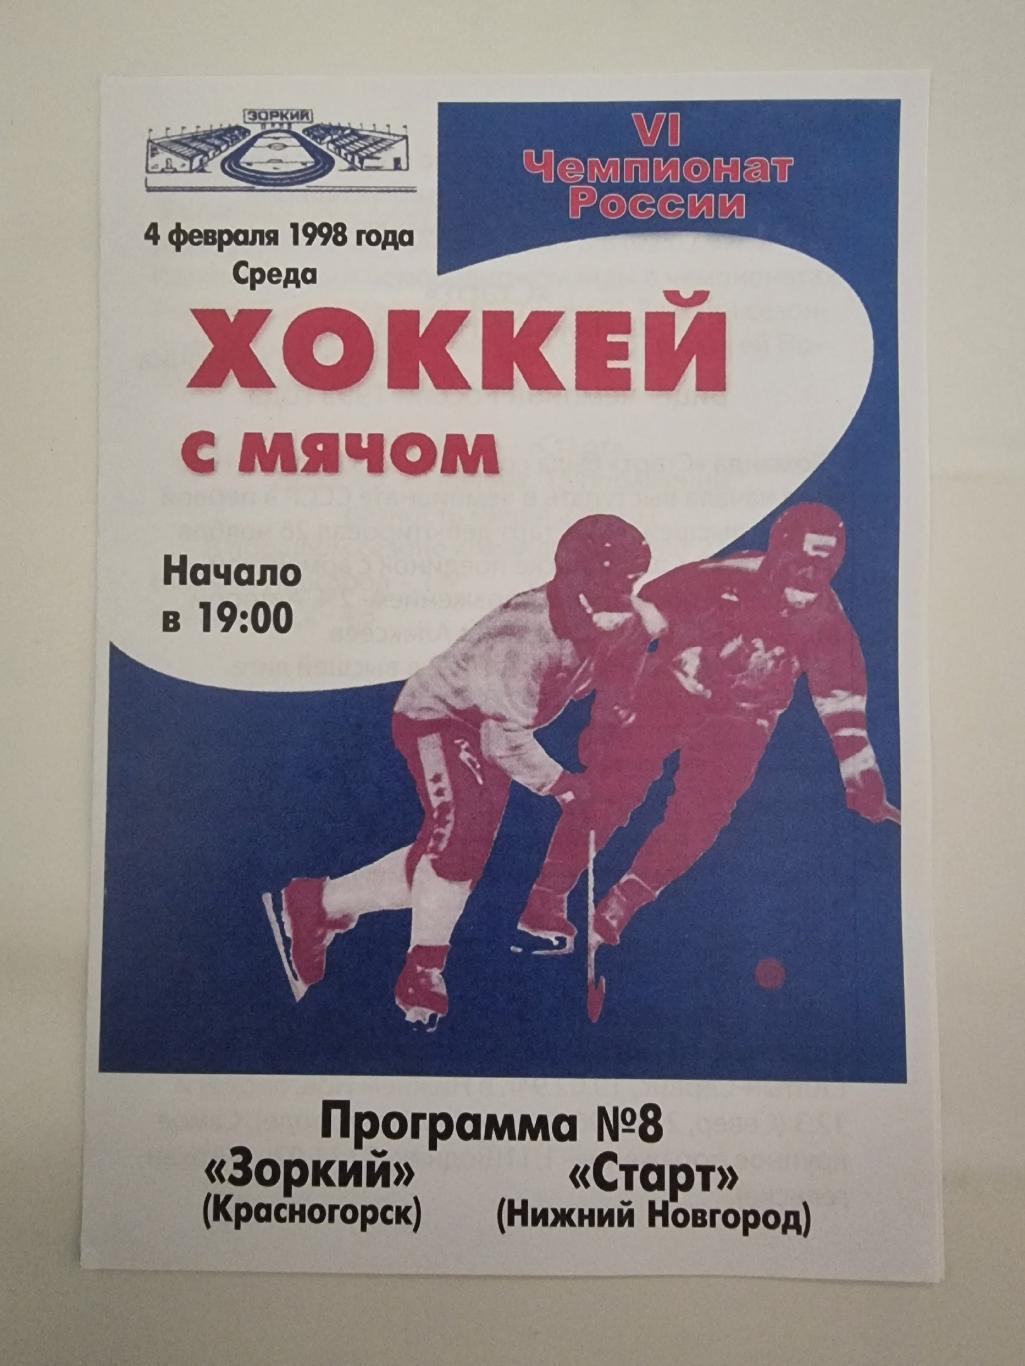 Хоккей с мячом. Зоркий Красногорск - Старт Нижний Новгород 4 февраля 1998